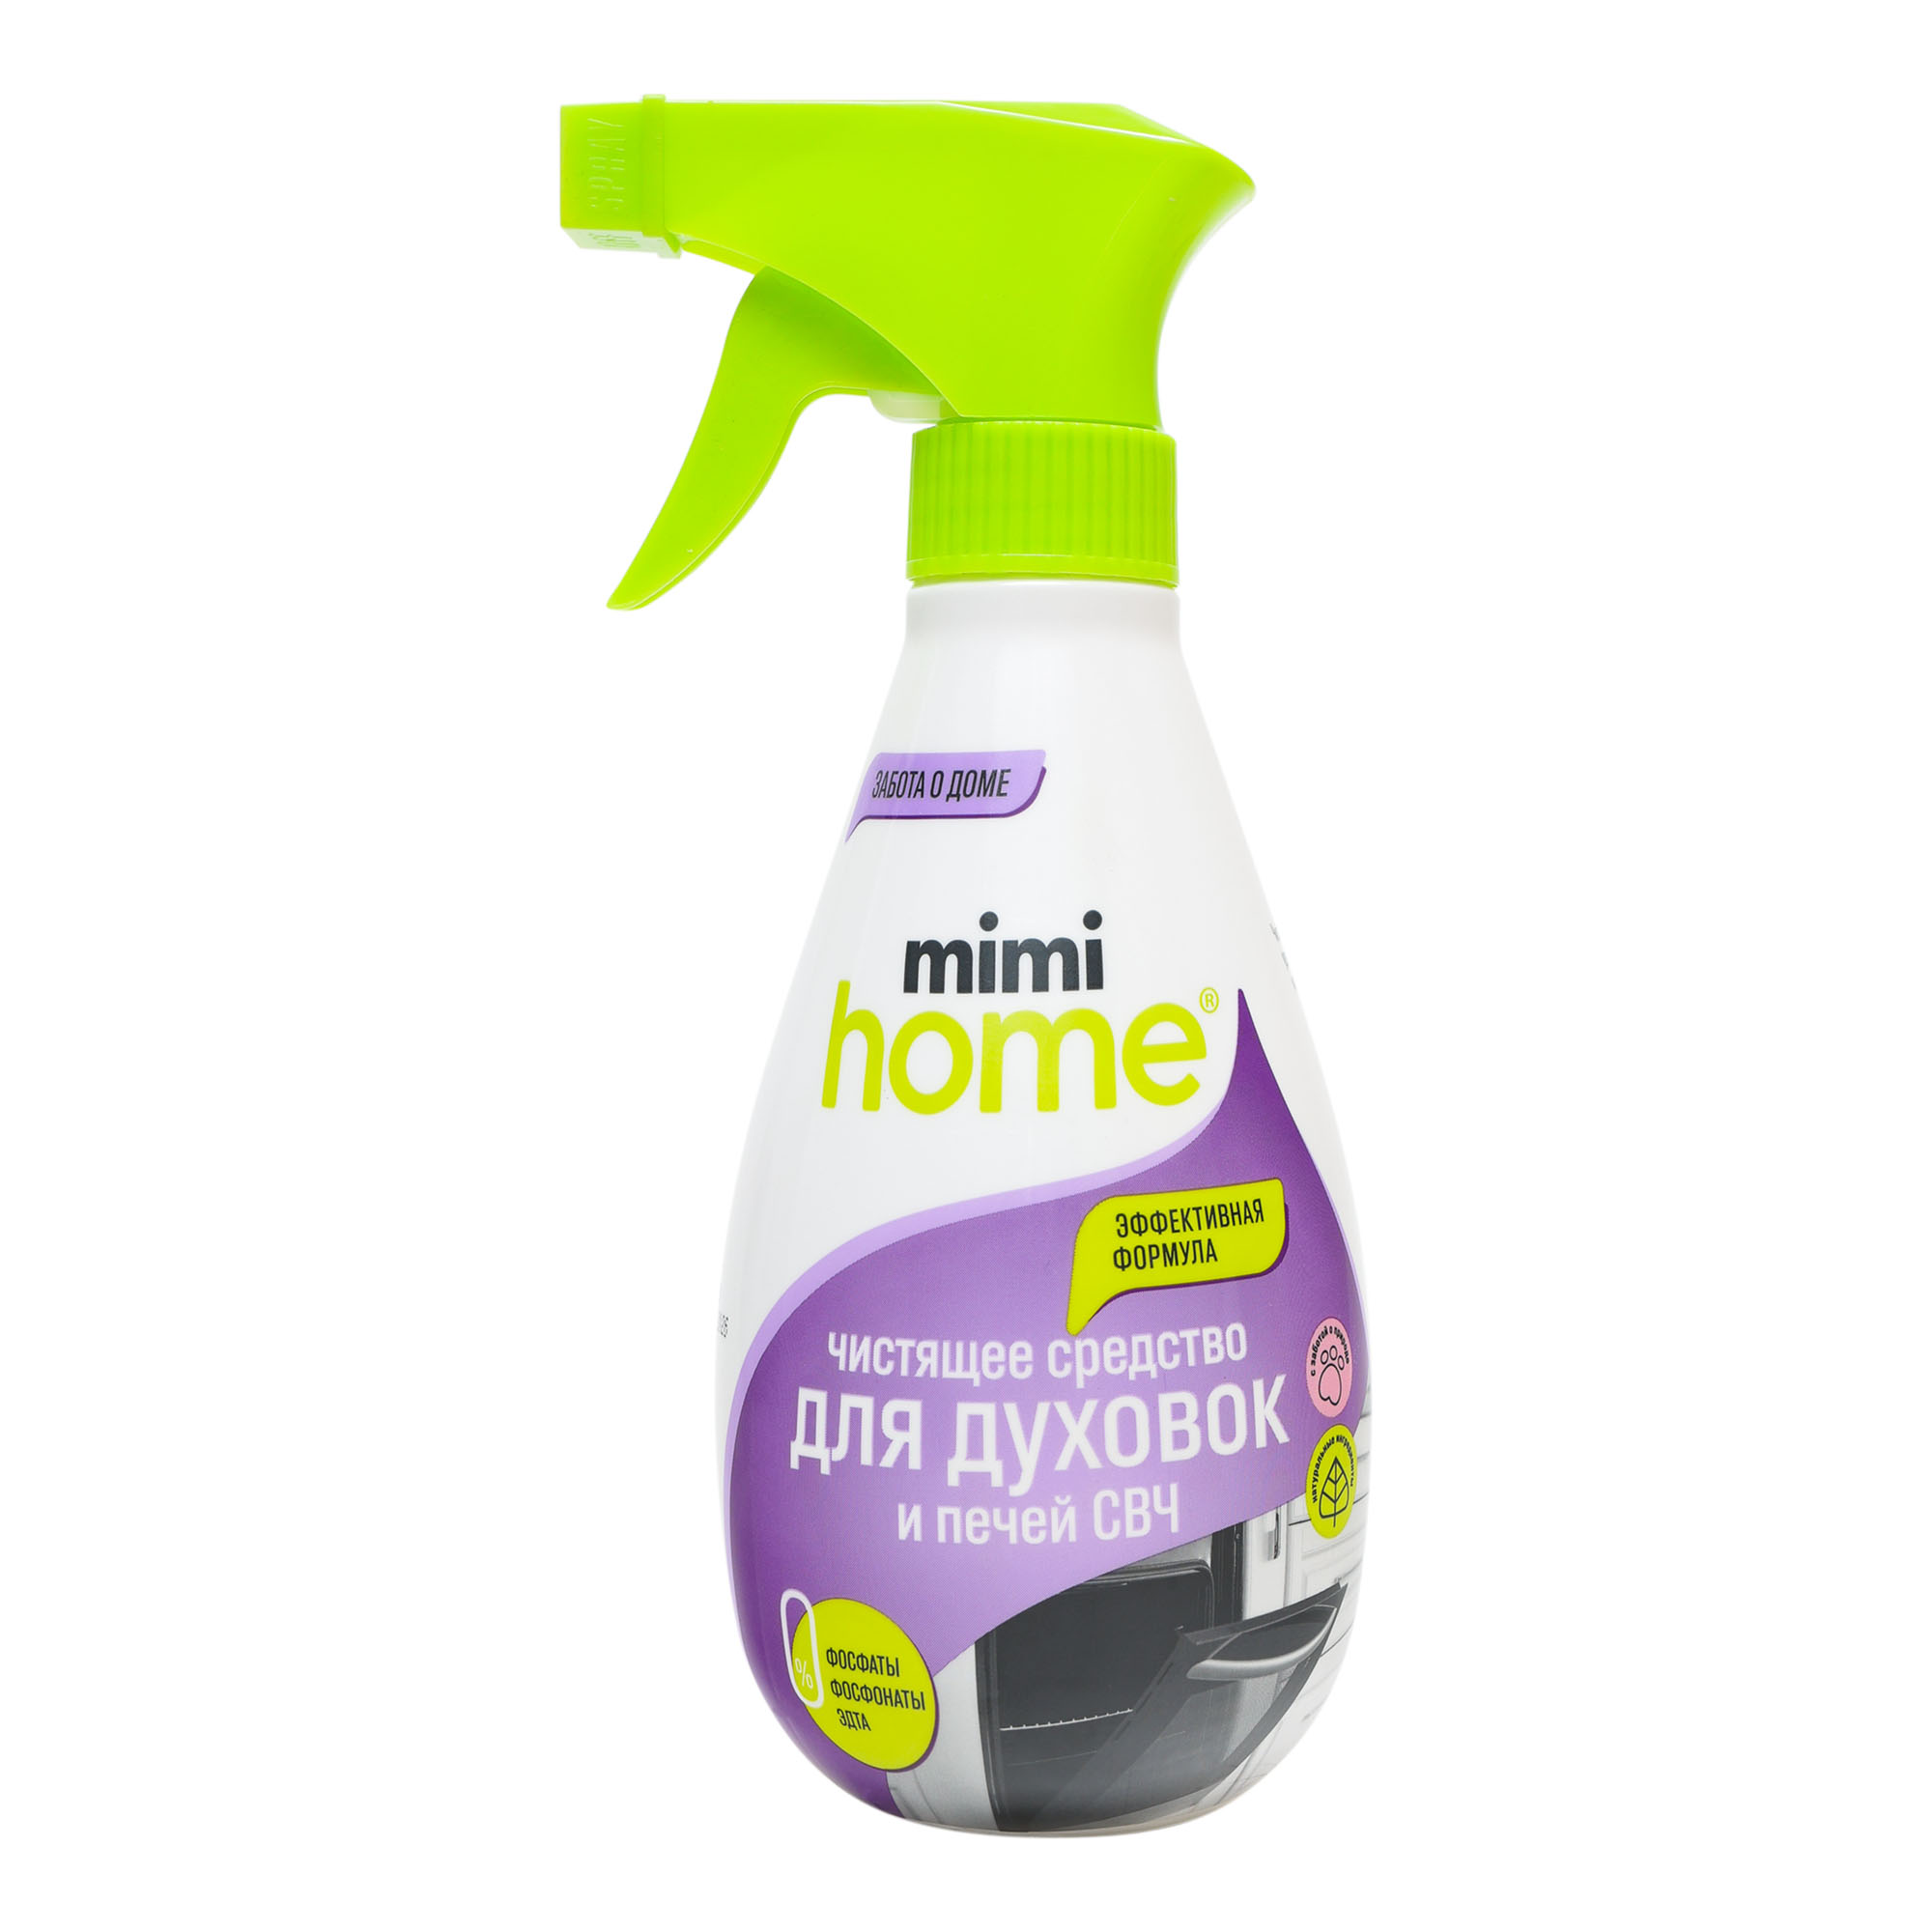 Средство чистящее Mimi Home для духовок и свч 370 мл средство чистящее mimi home для духовок и свч 370 мл